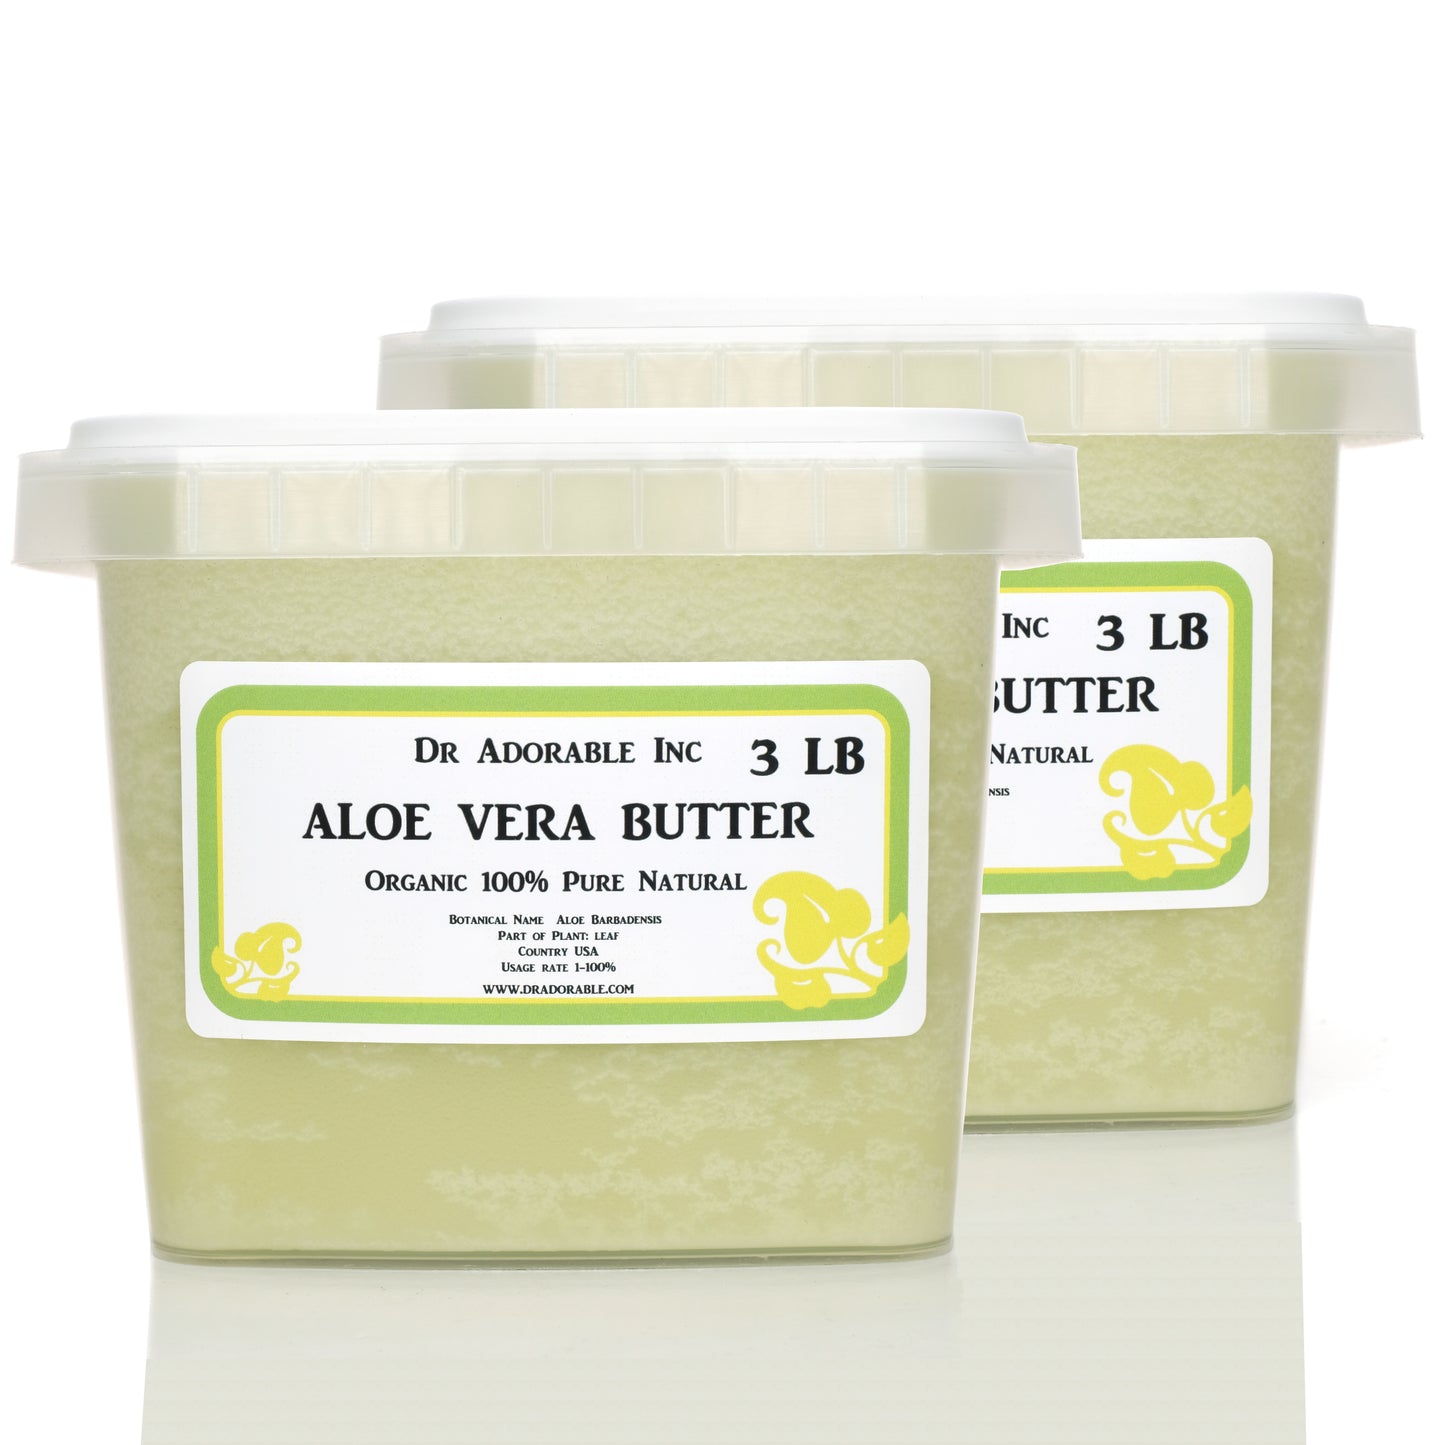 Aloe Vera Butter - Pure Natural Premium Organic Cold Pressed